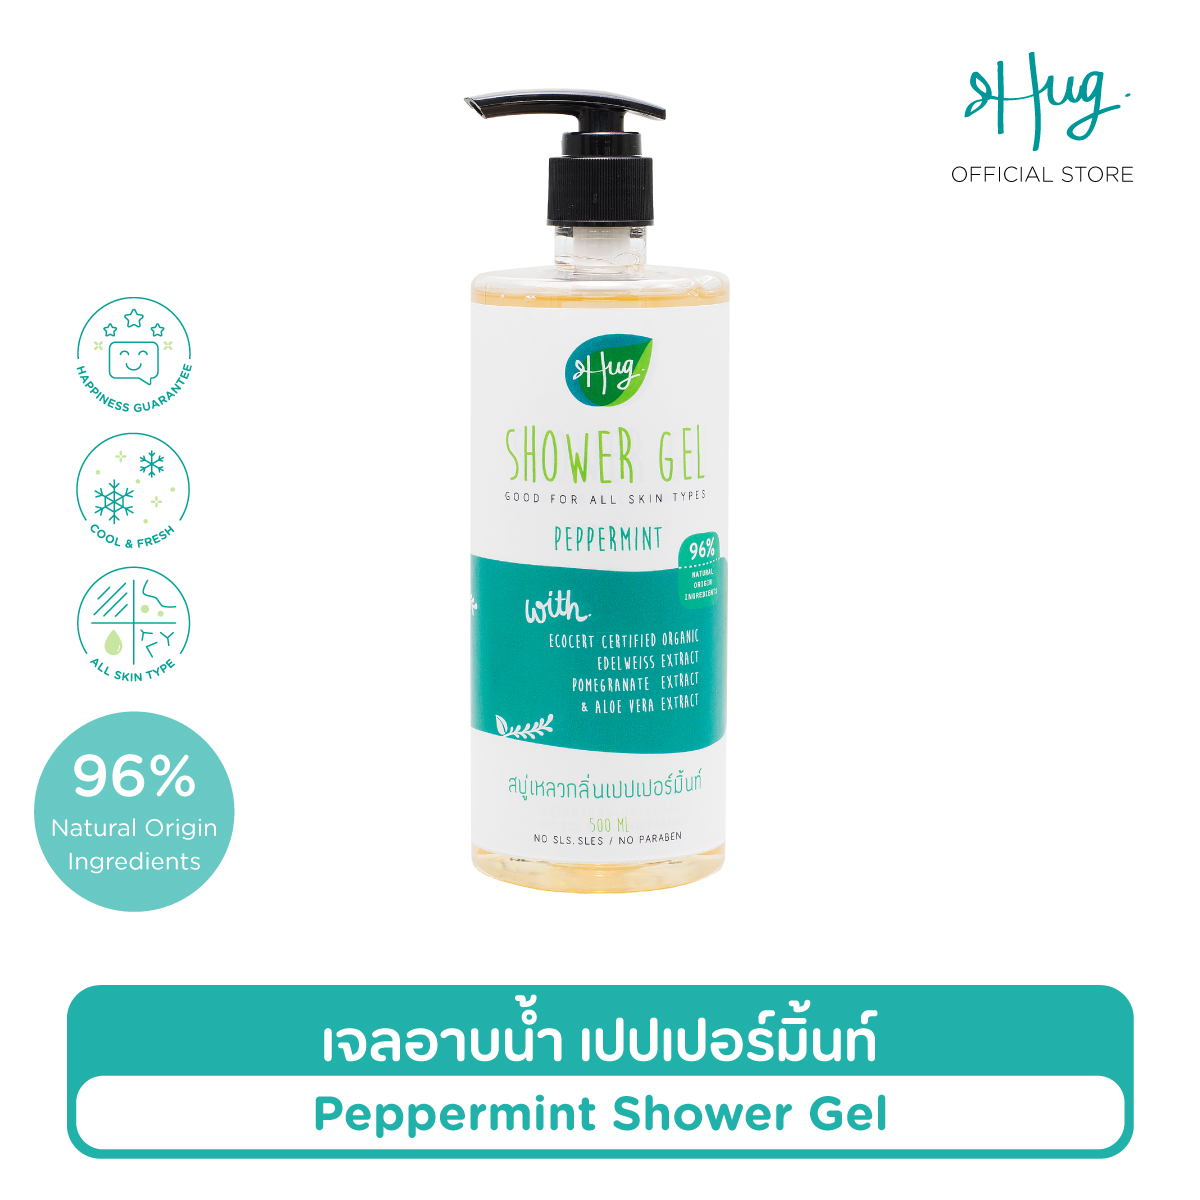 ซื้อที่ไหน Hug : Shower Gel with 95-96% Natural Ingredients — ฮัก เจลอาบน้ำสูตรอ่อนโยน สบู่เหลว ส่วนผสมจากธรรมชาติ 95-96% พร้อมสารสกัดออร์แกนิค [ขนาด 500 ml]